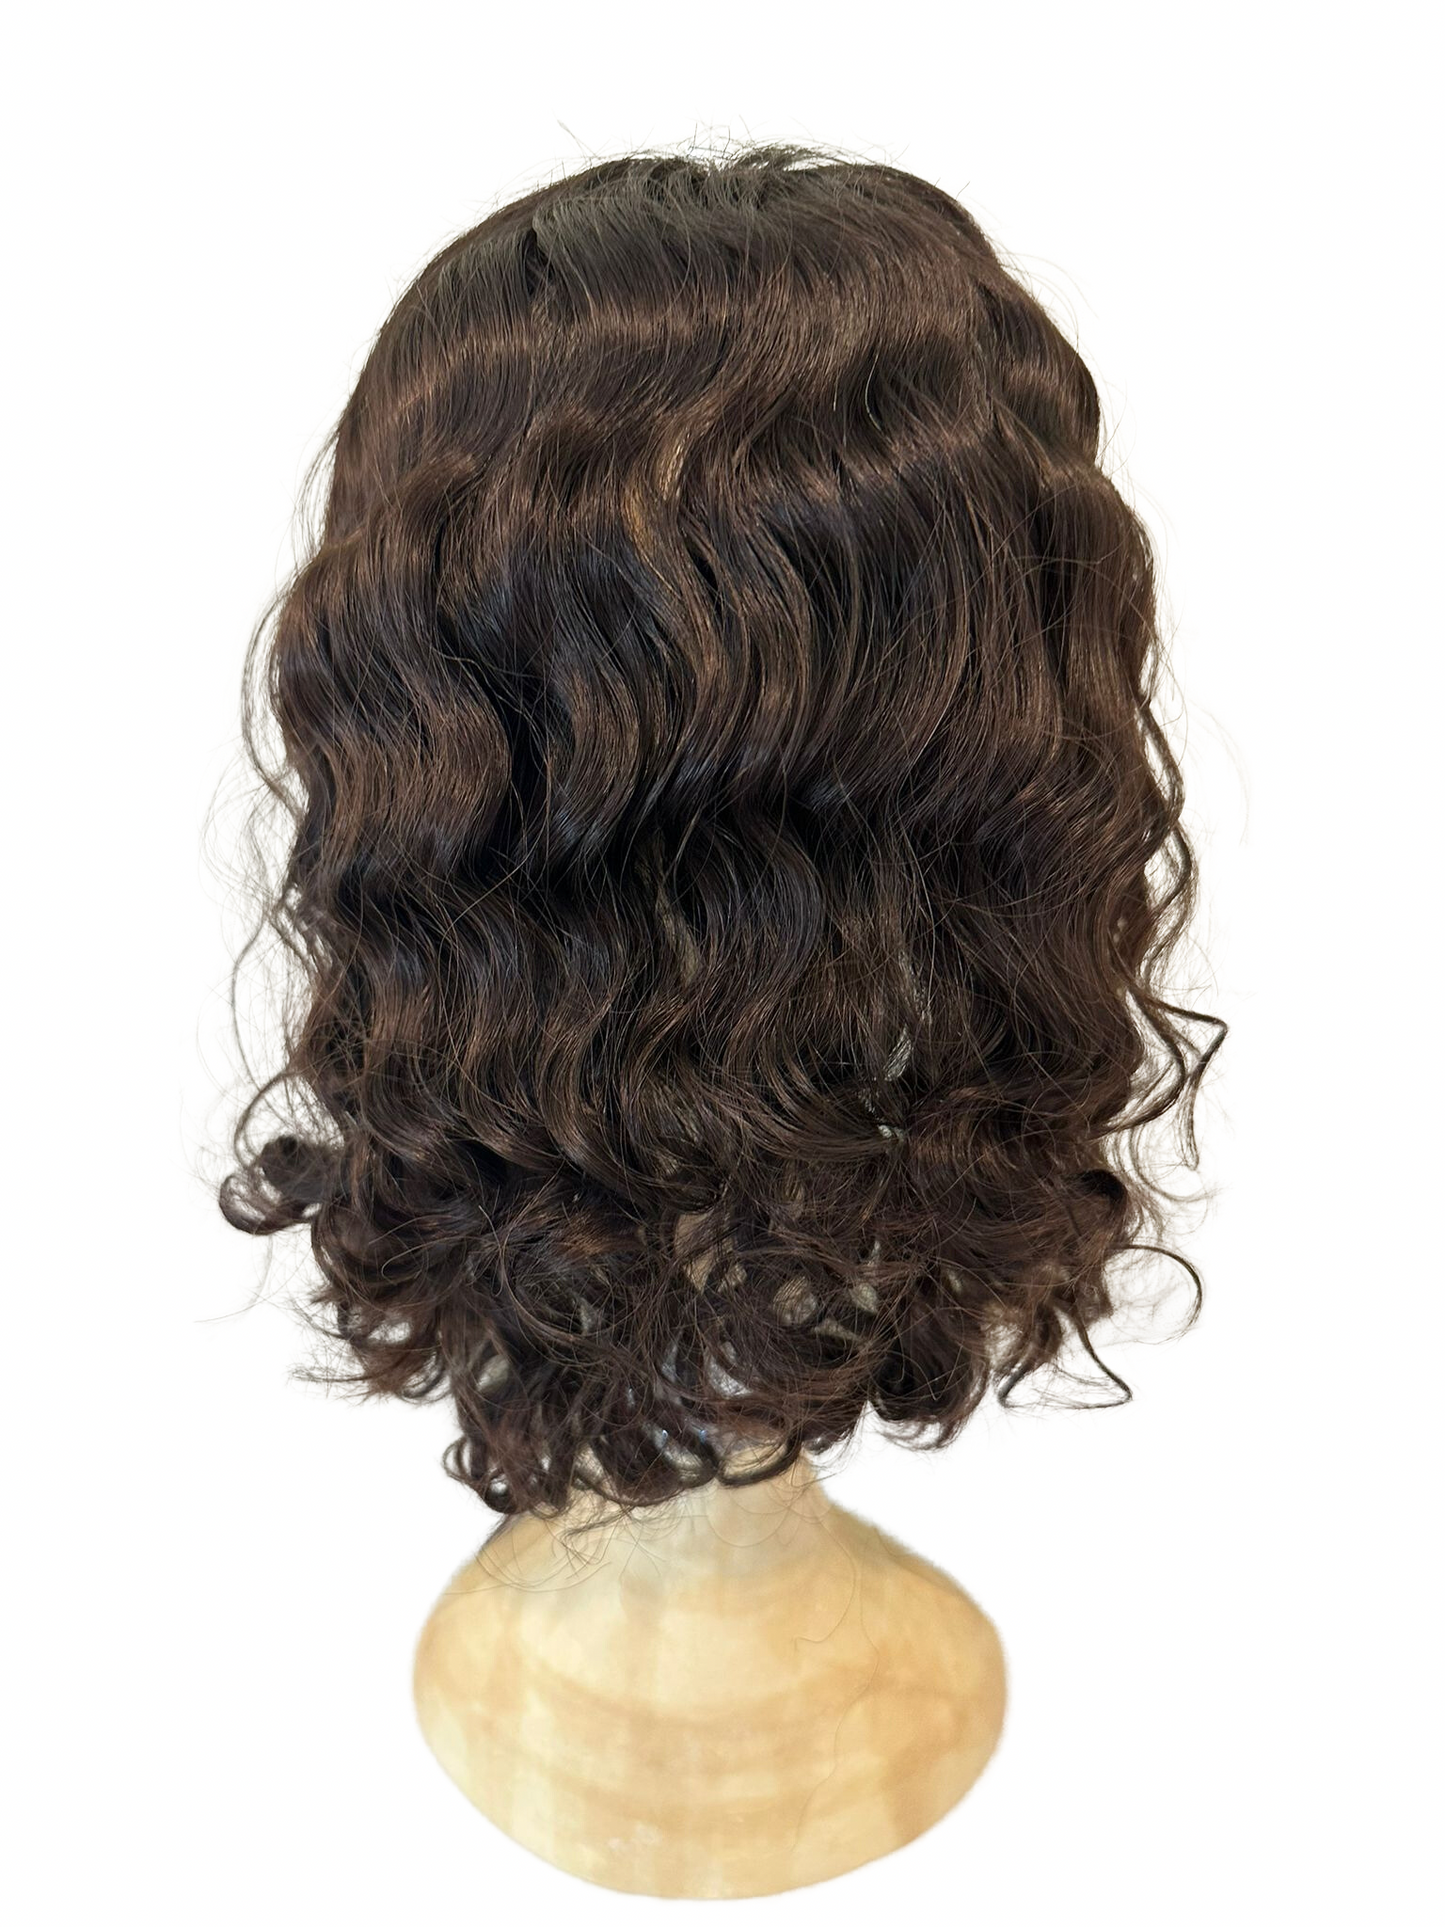 Stock394 KFD Kippah Fall - 5" Cap, 18" Length, Color 2, Curly